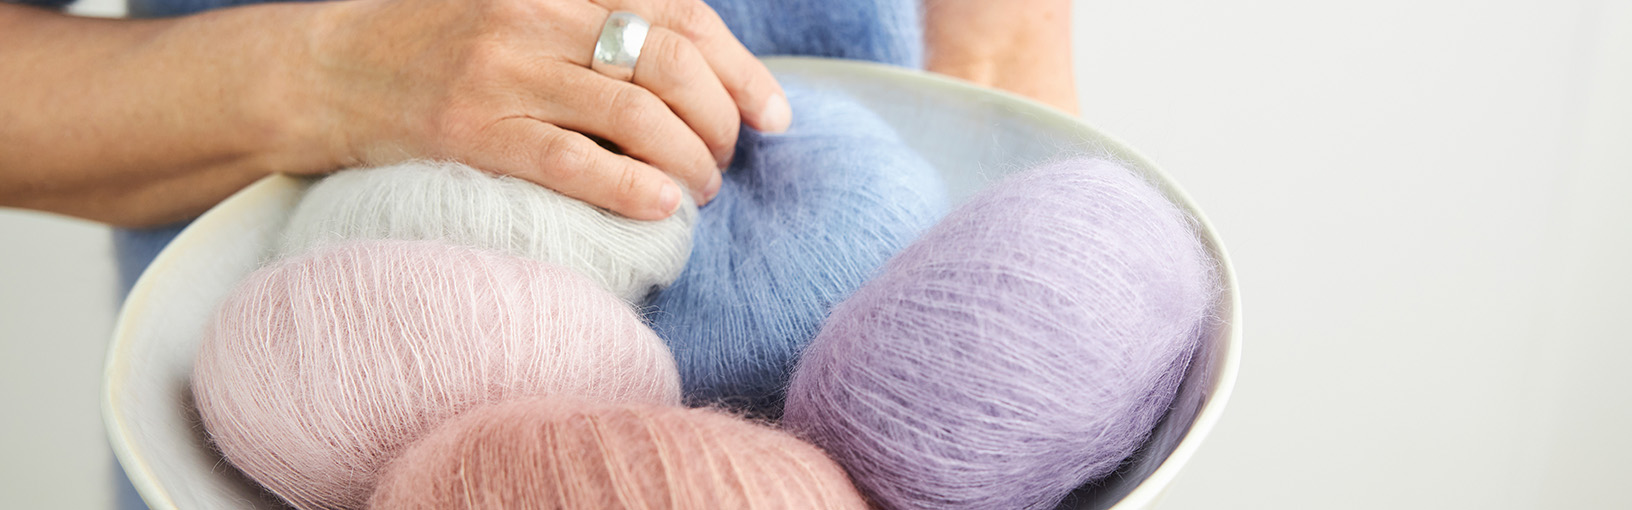 INNOVANT, ERGONOMIQUE - LA MEILLEURE QUALITÉ Aiguilles Lana Grossa | Aiguilles à tricoter